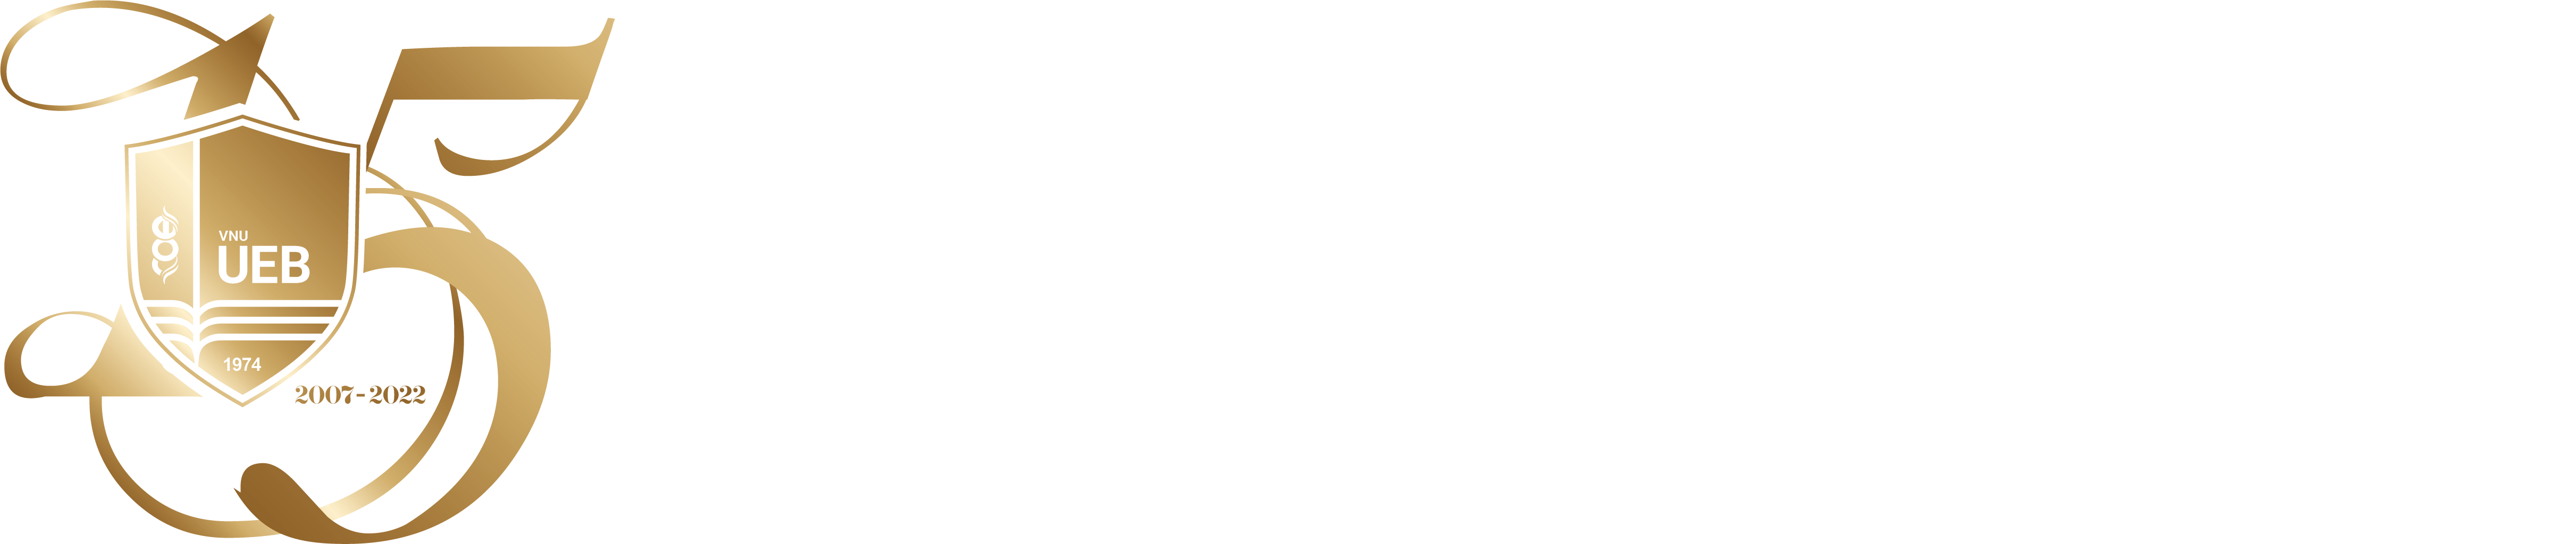 Trường đại học Kinh tế - Đại học Quốc gia Hà Nội